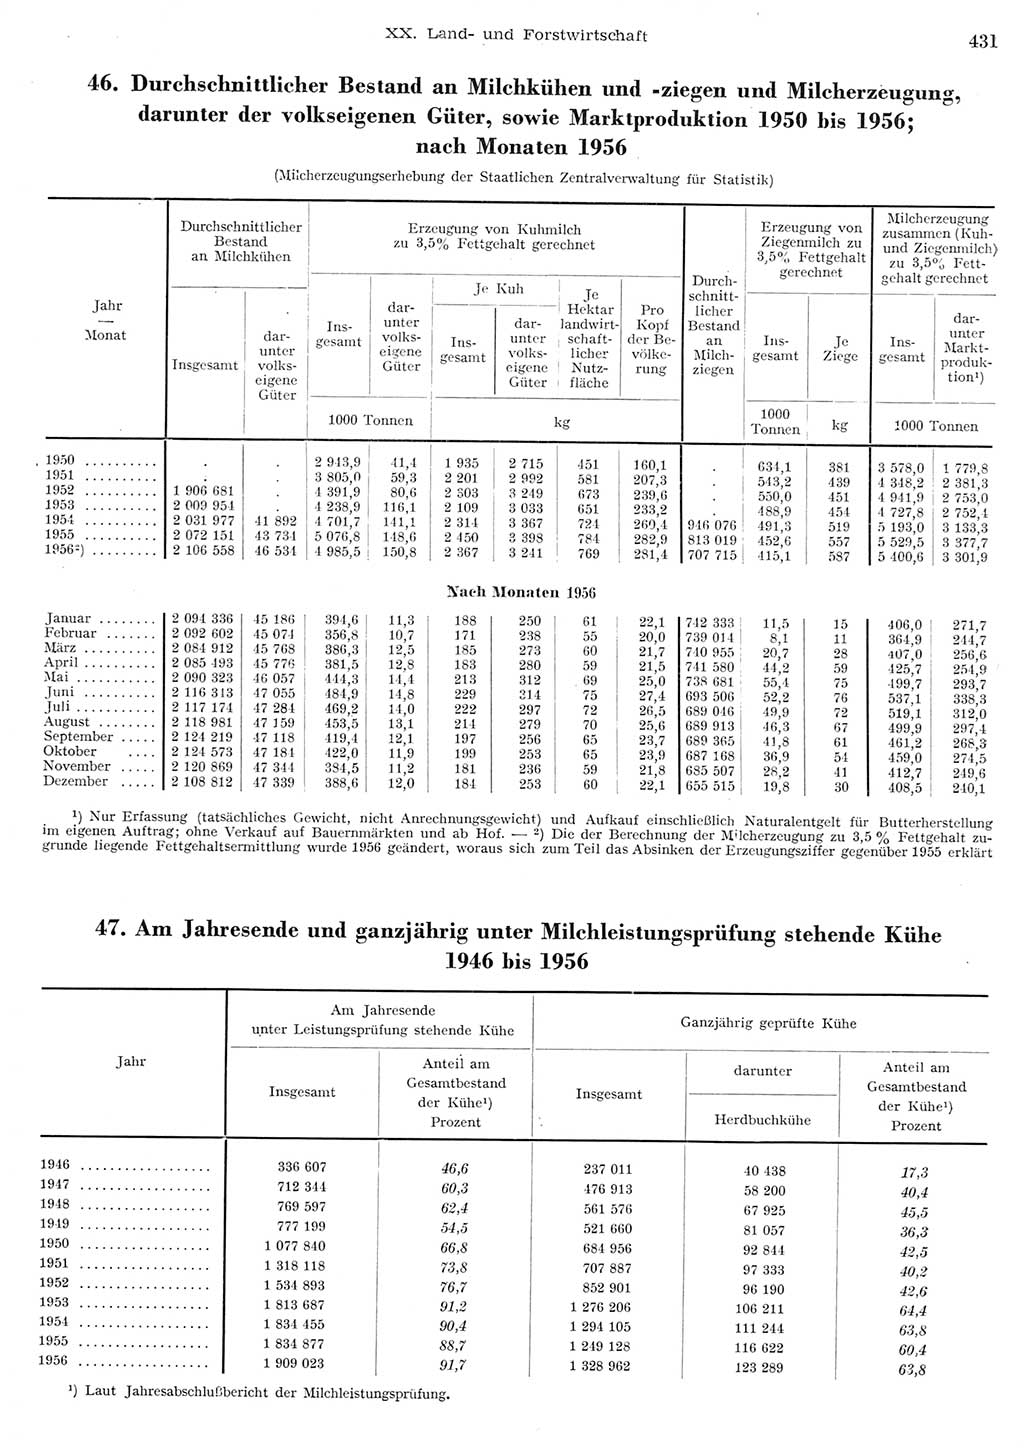 Statistisches Jahrbuch der Deutschen Demokratischen Republik (DDR) 1956, Seite 431 (Stat. Jb. DDR 1956, S. 431)